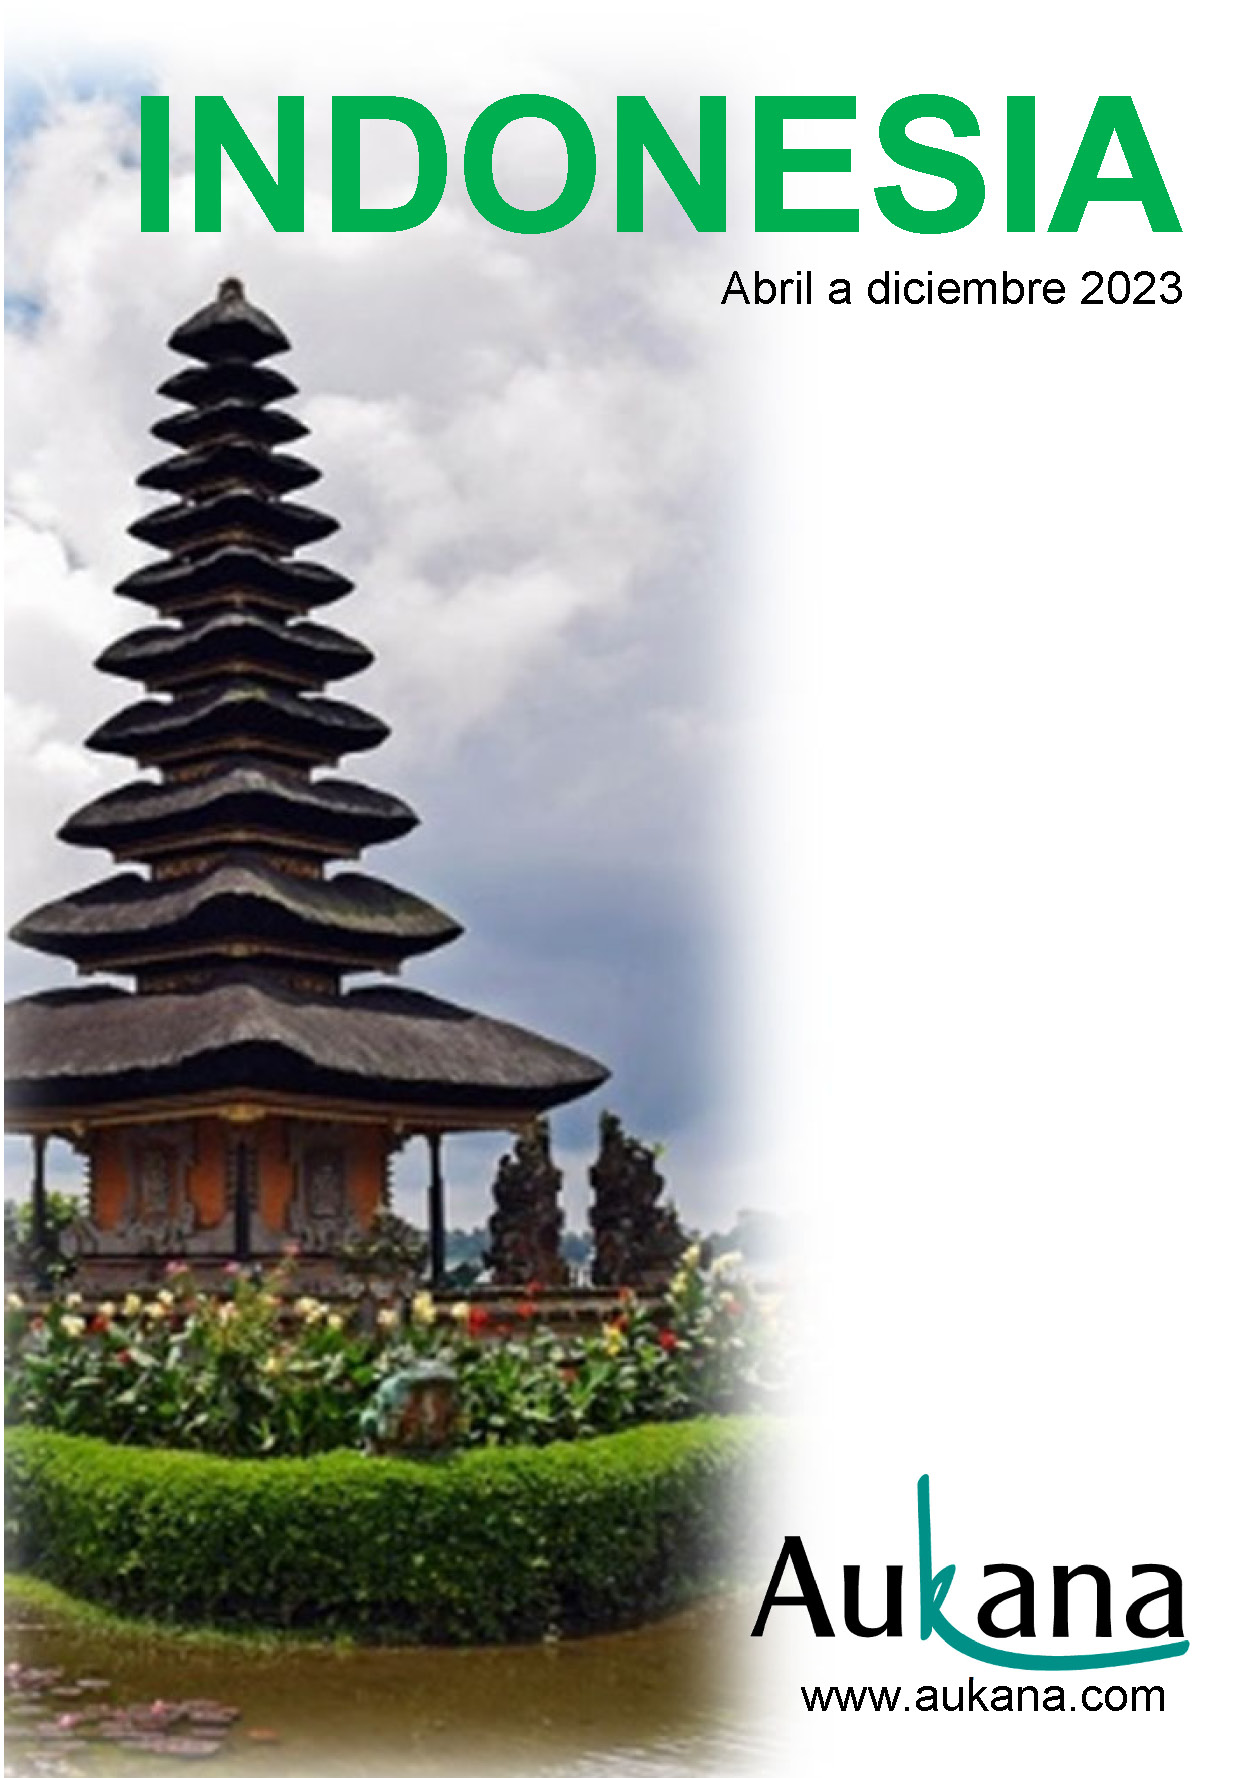 Catalogo Aukana Travel Indonesia 2023